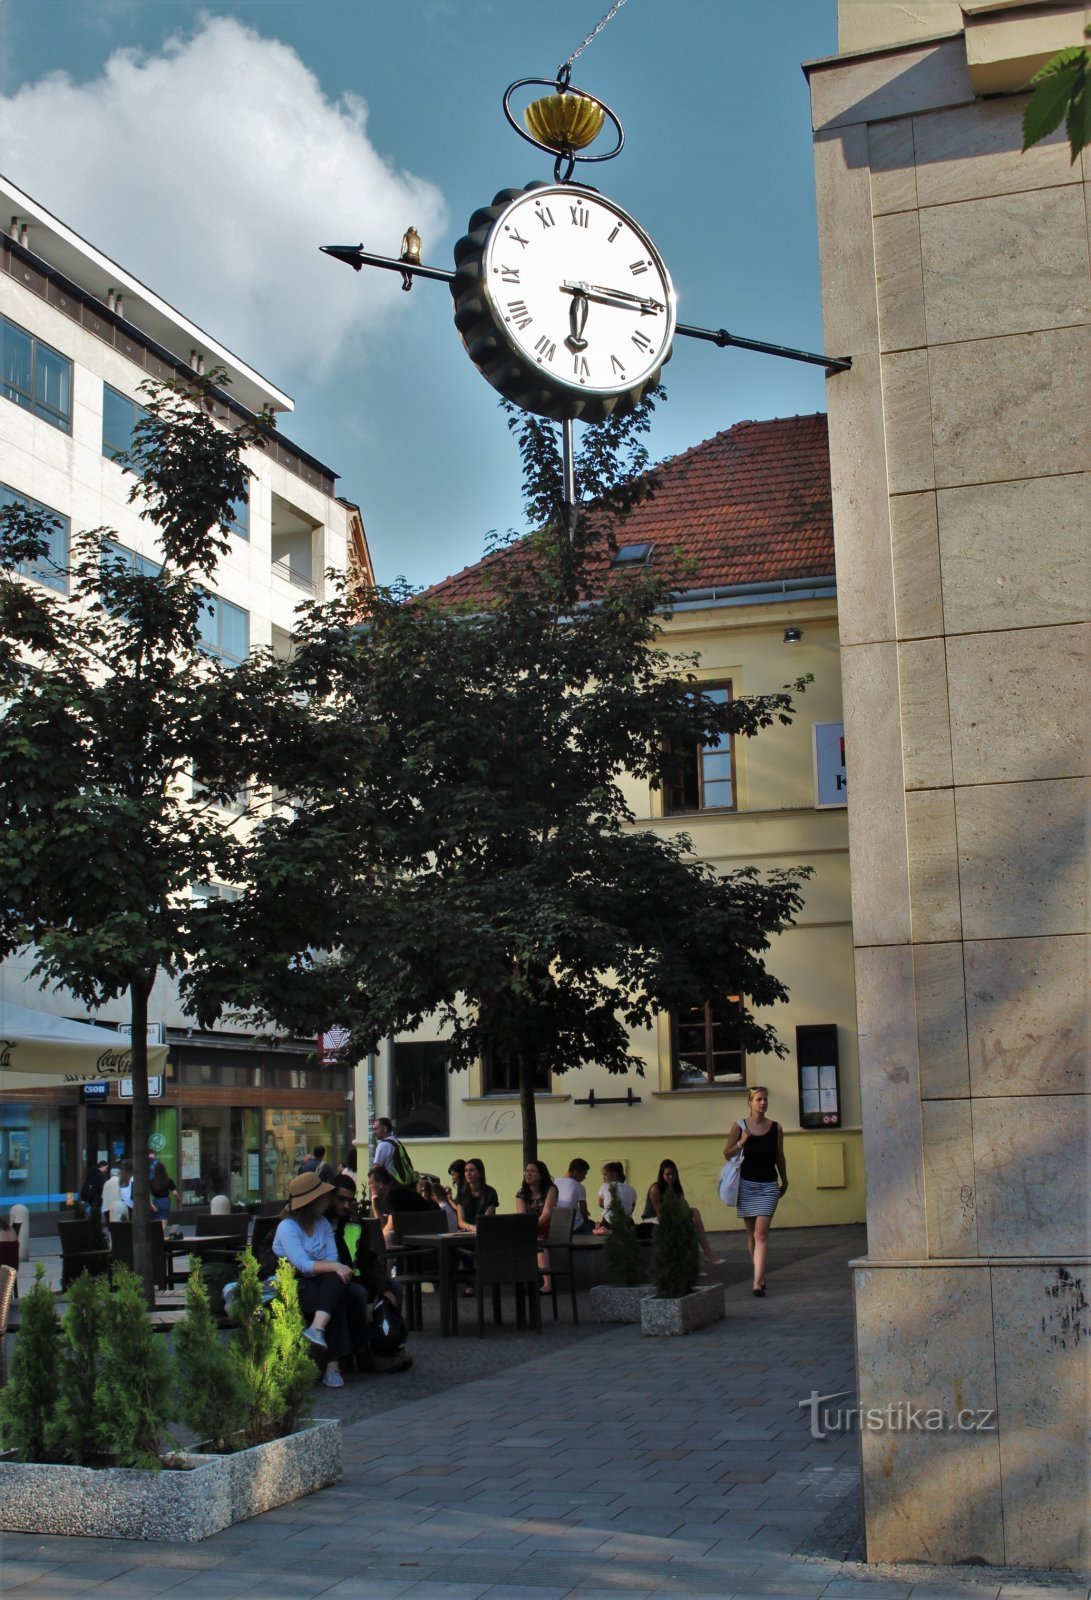 Brno - ur på tjekkisk